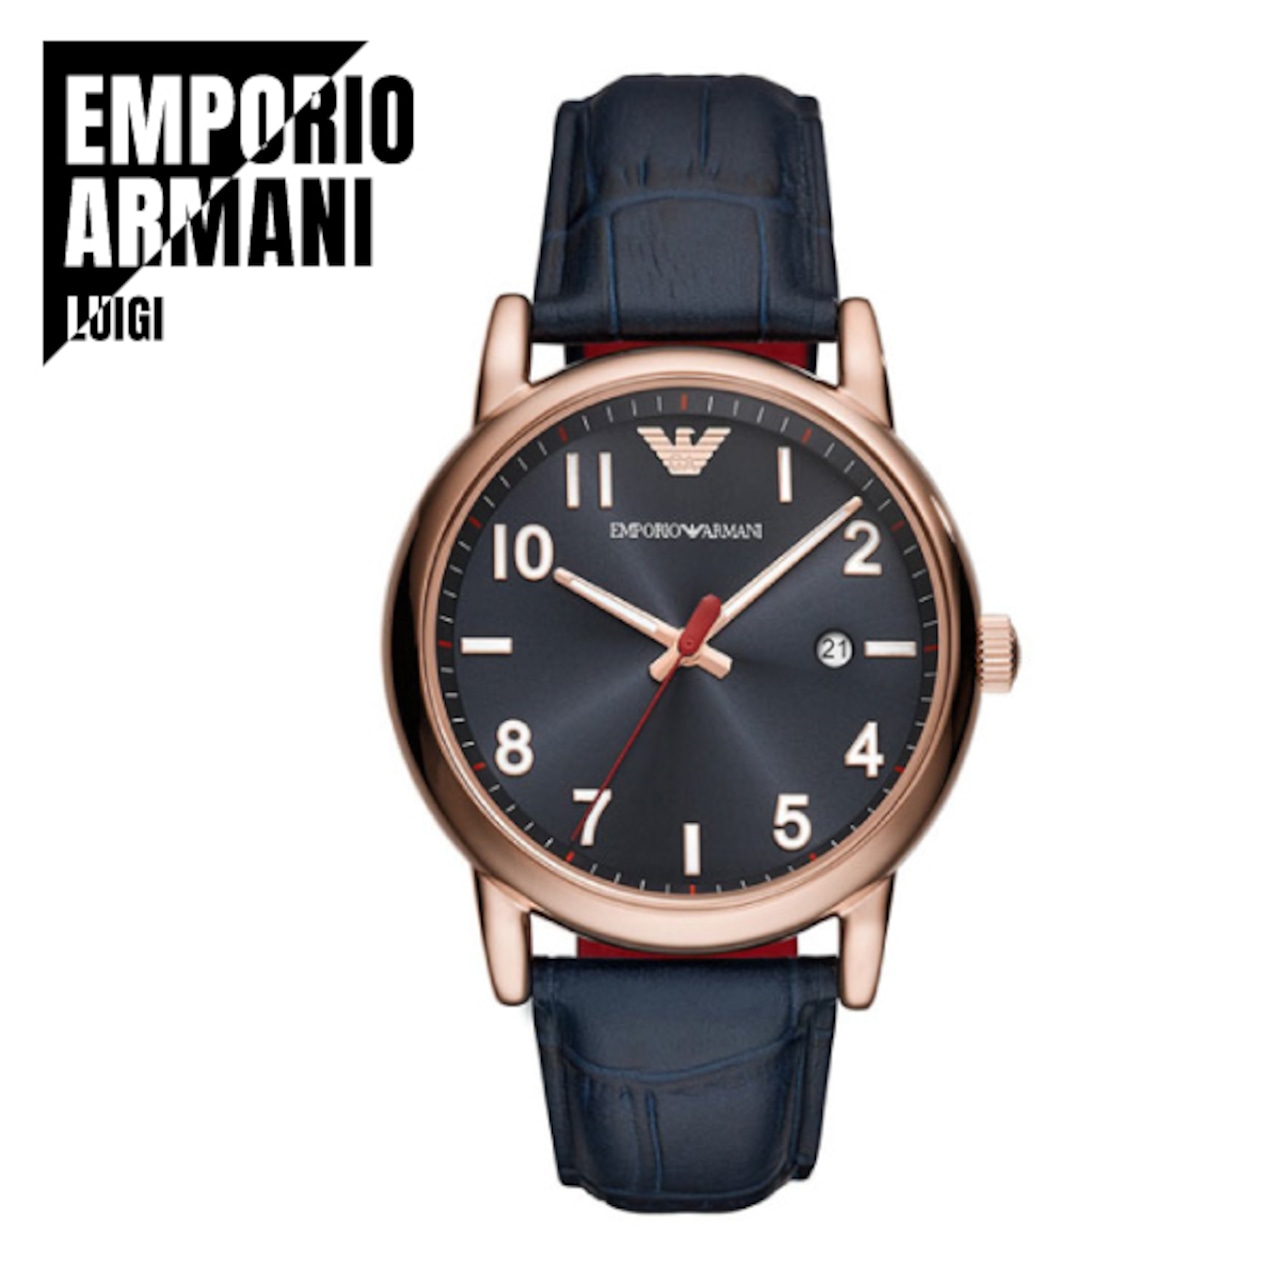 EMPORIO ARMANI エンポリオアルマーニ  LUIGI ルイージ AR11135 腕時計 メンズ